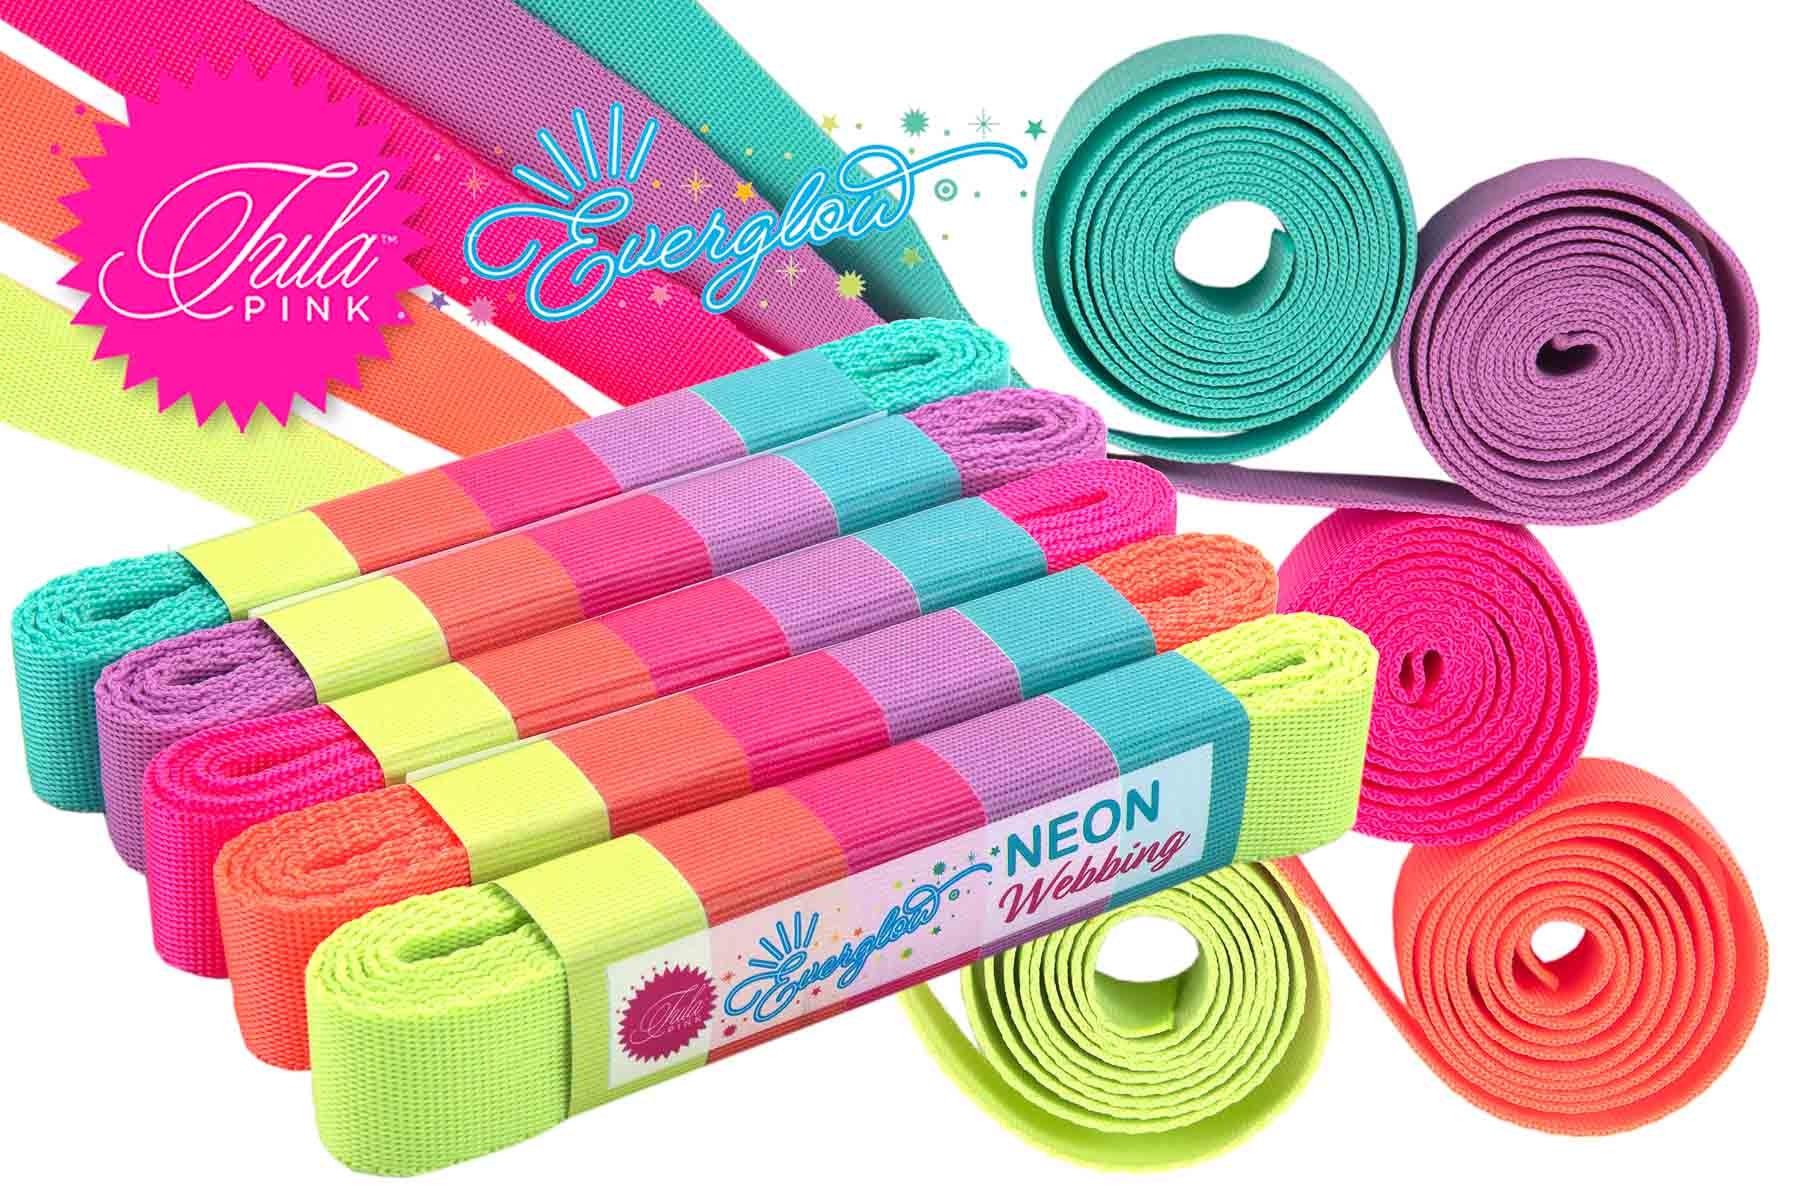 New Neon Webbing 1 by Tula Pink! – Renaissance Ribbons